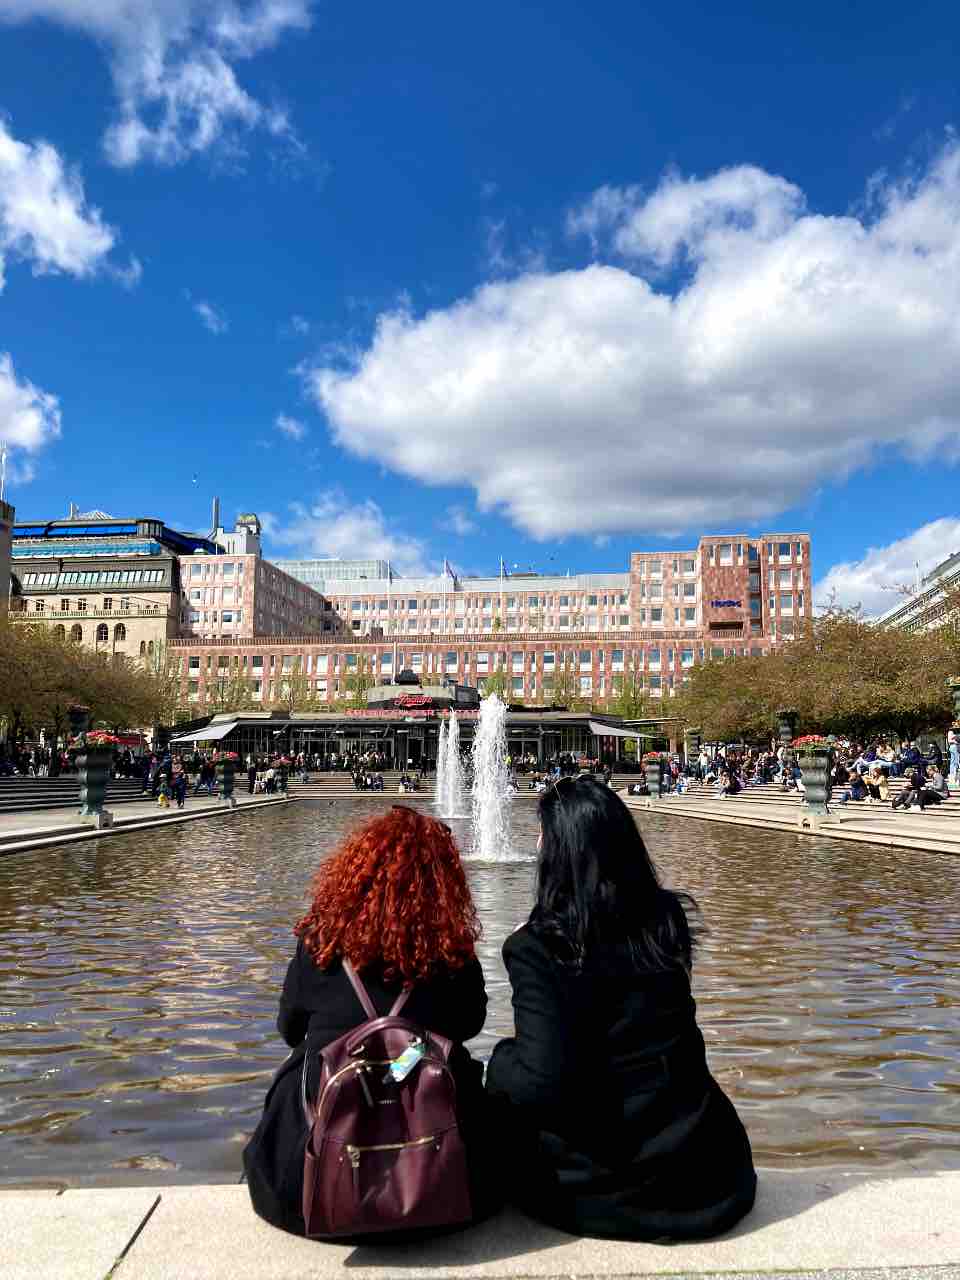 Δύο φίλες, η Ζωή κι η Ελένη (Worldtravellen) μπροστά στα συντριβάνια των Βασιλικών Κήπων, Kungsträdgårde στη Στοκχόλμη